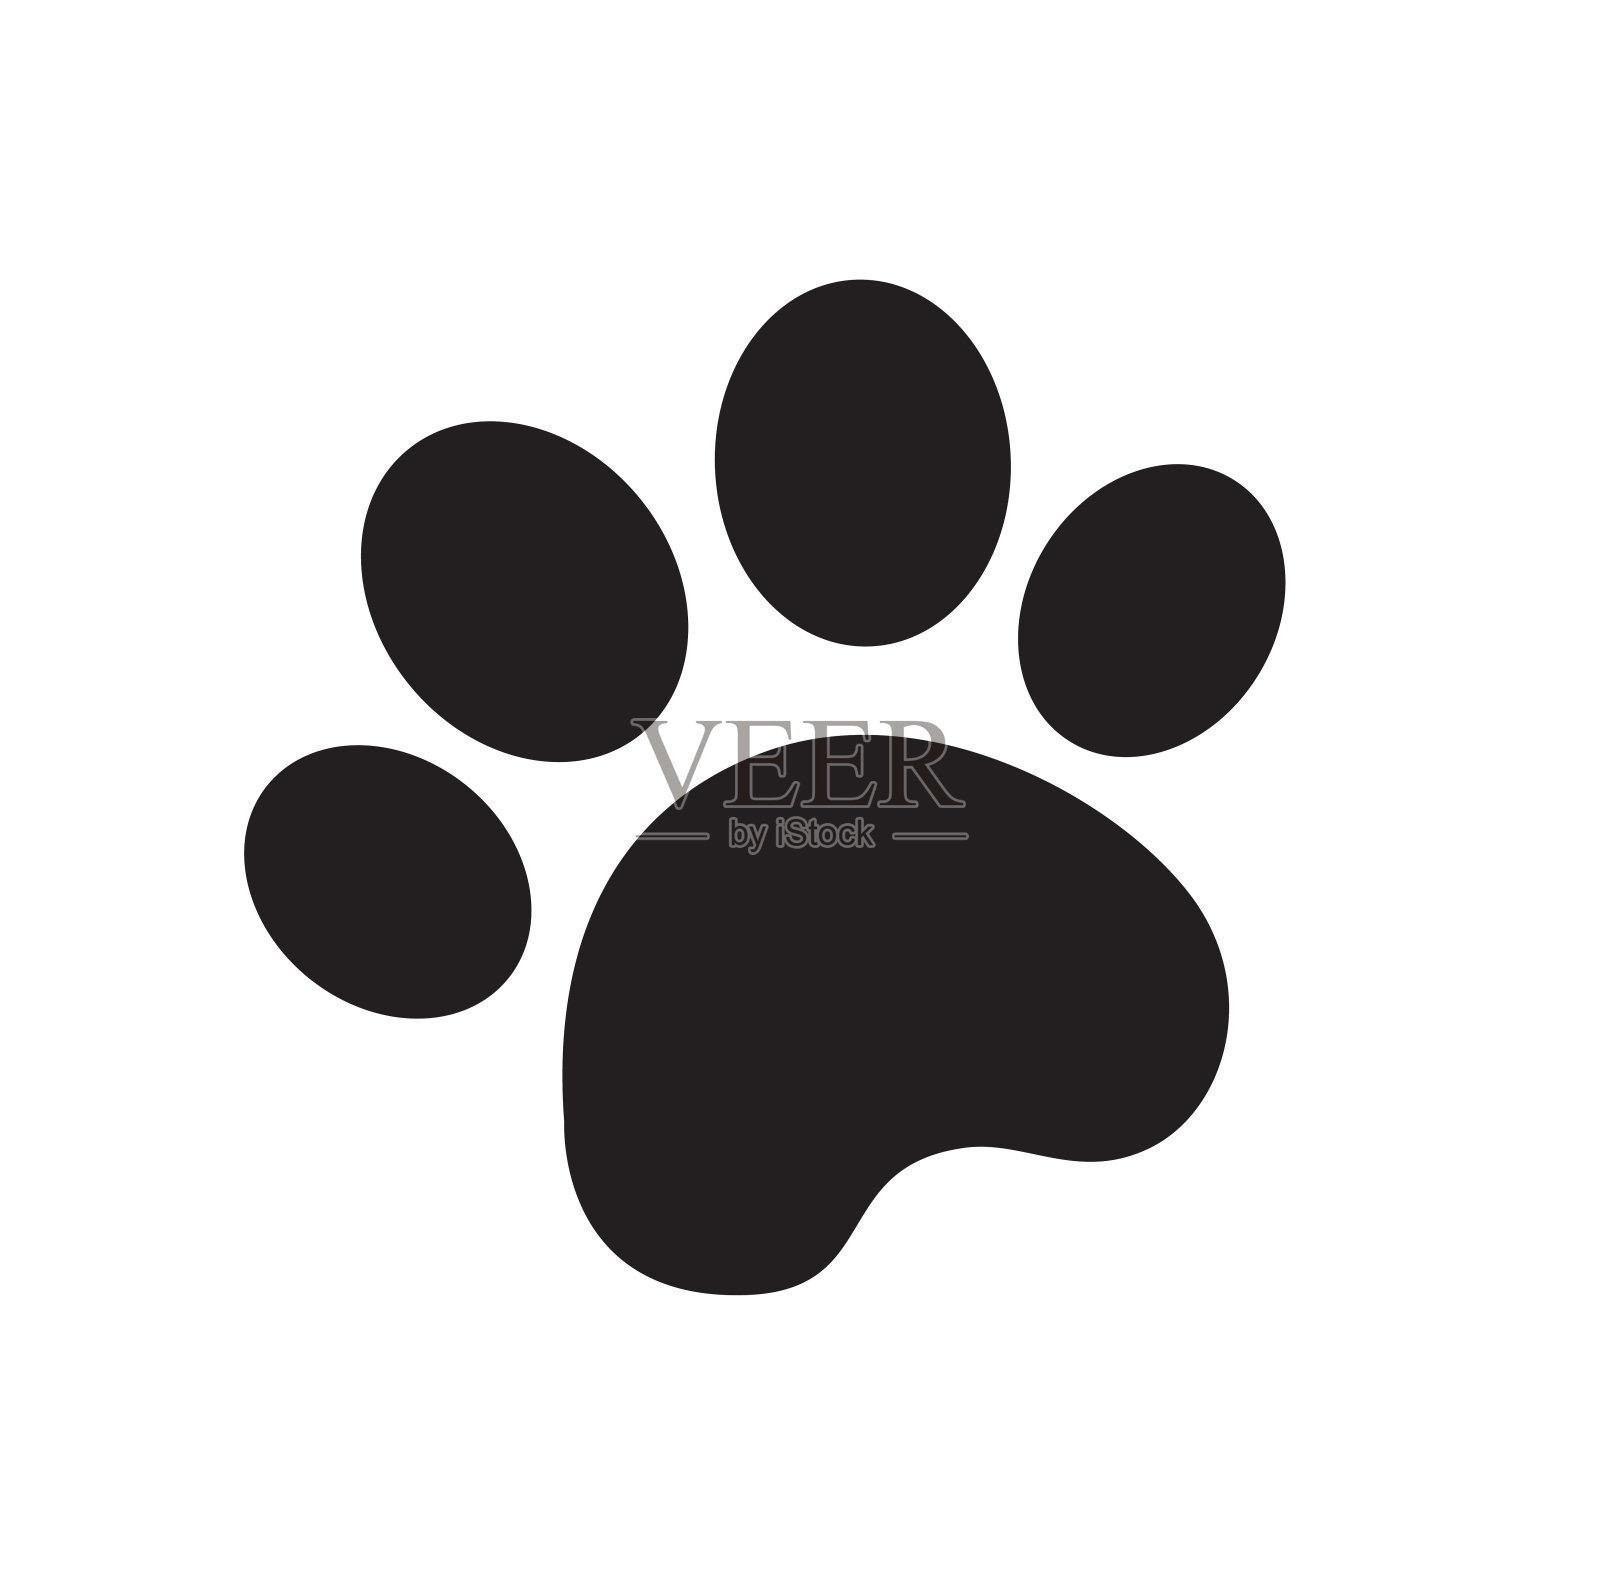 狗爪子 库存图片. 图片 包括有 宠物, 小狗, 爪子, 英尺, 形状, 标记, 打印, 敌意, 宏指令 - 101372945